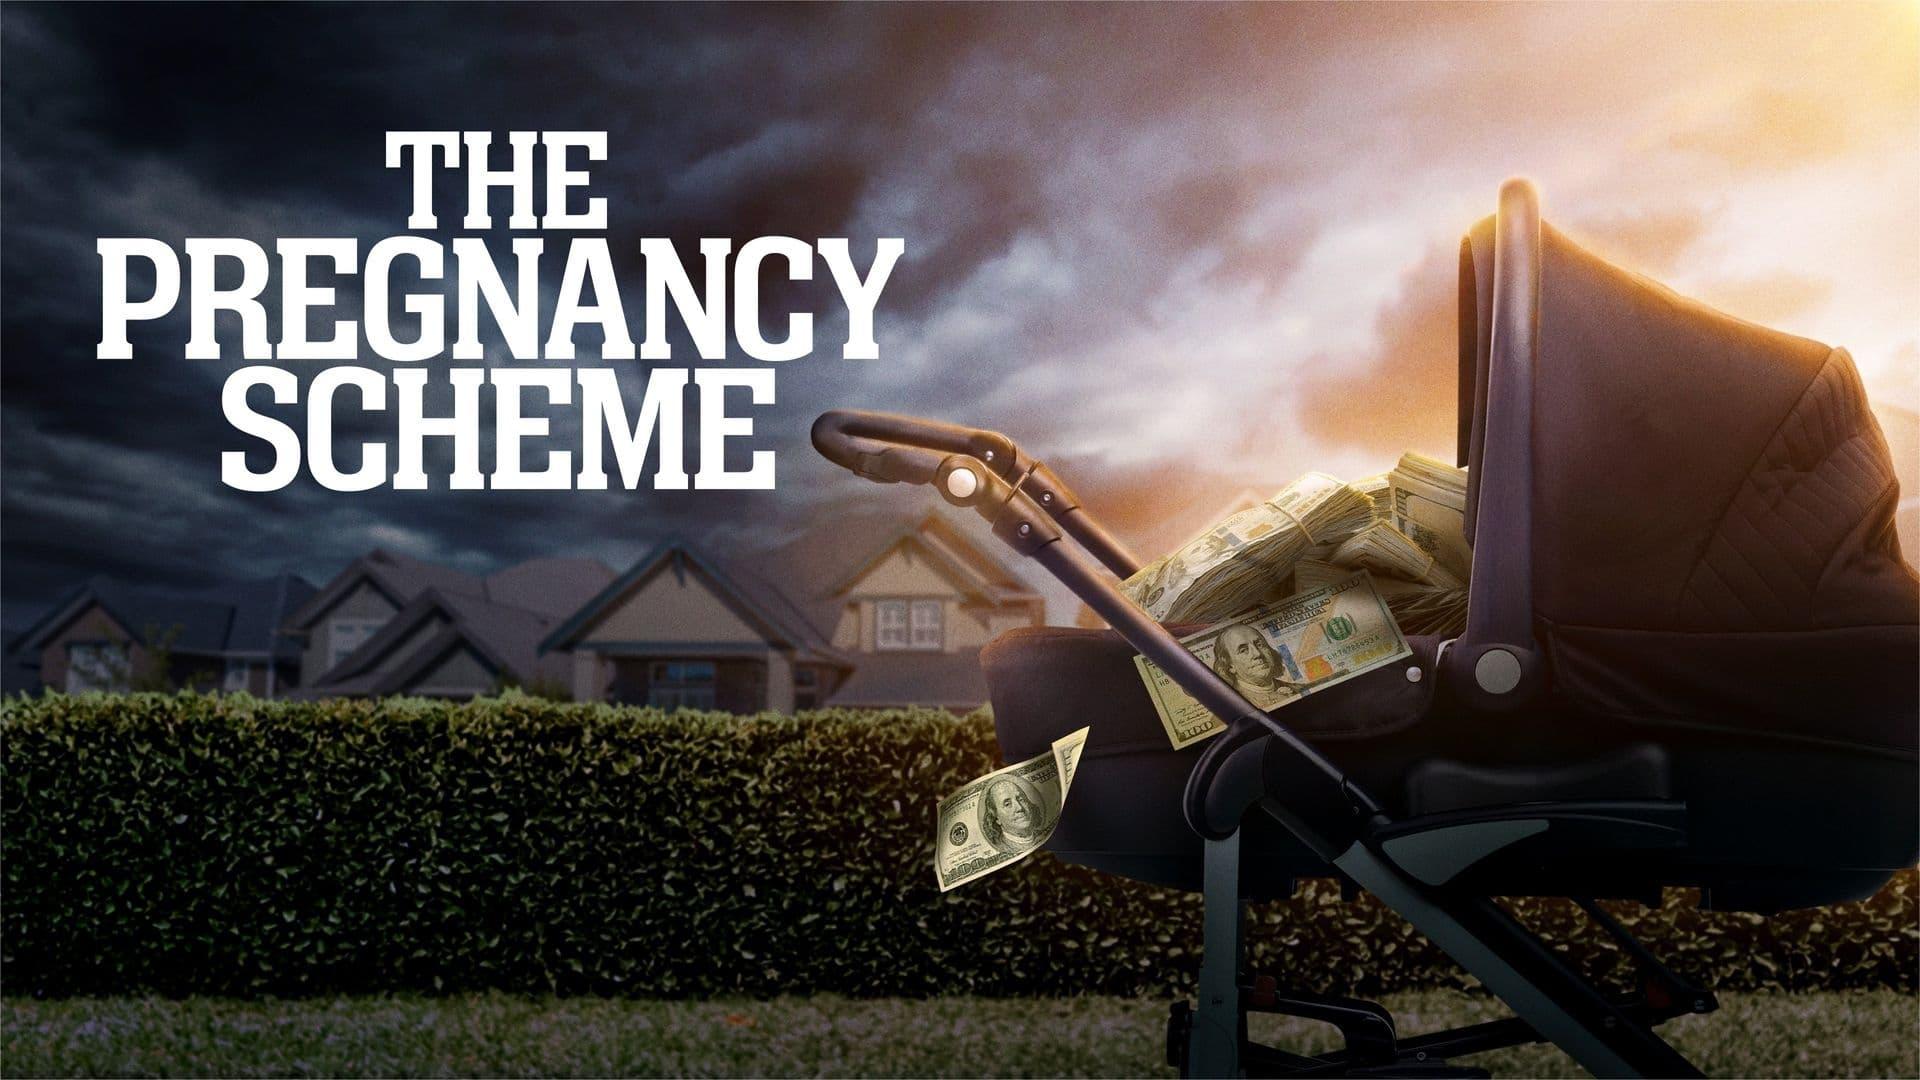 The Pregnancy Scheme backdrop